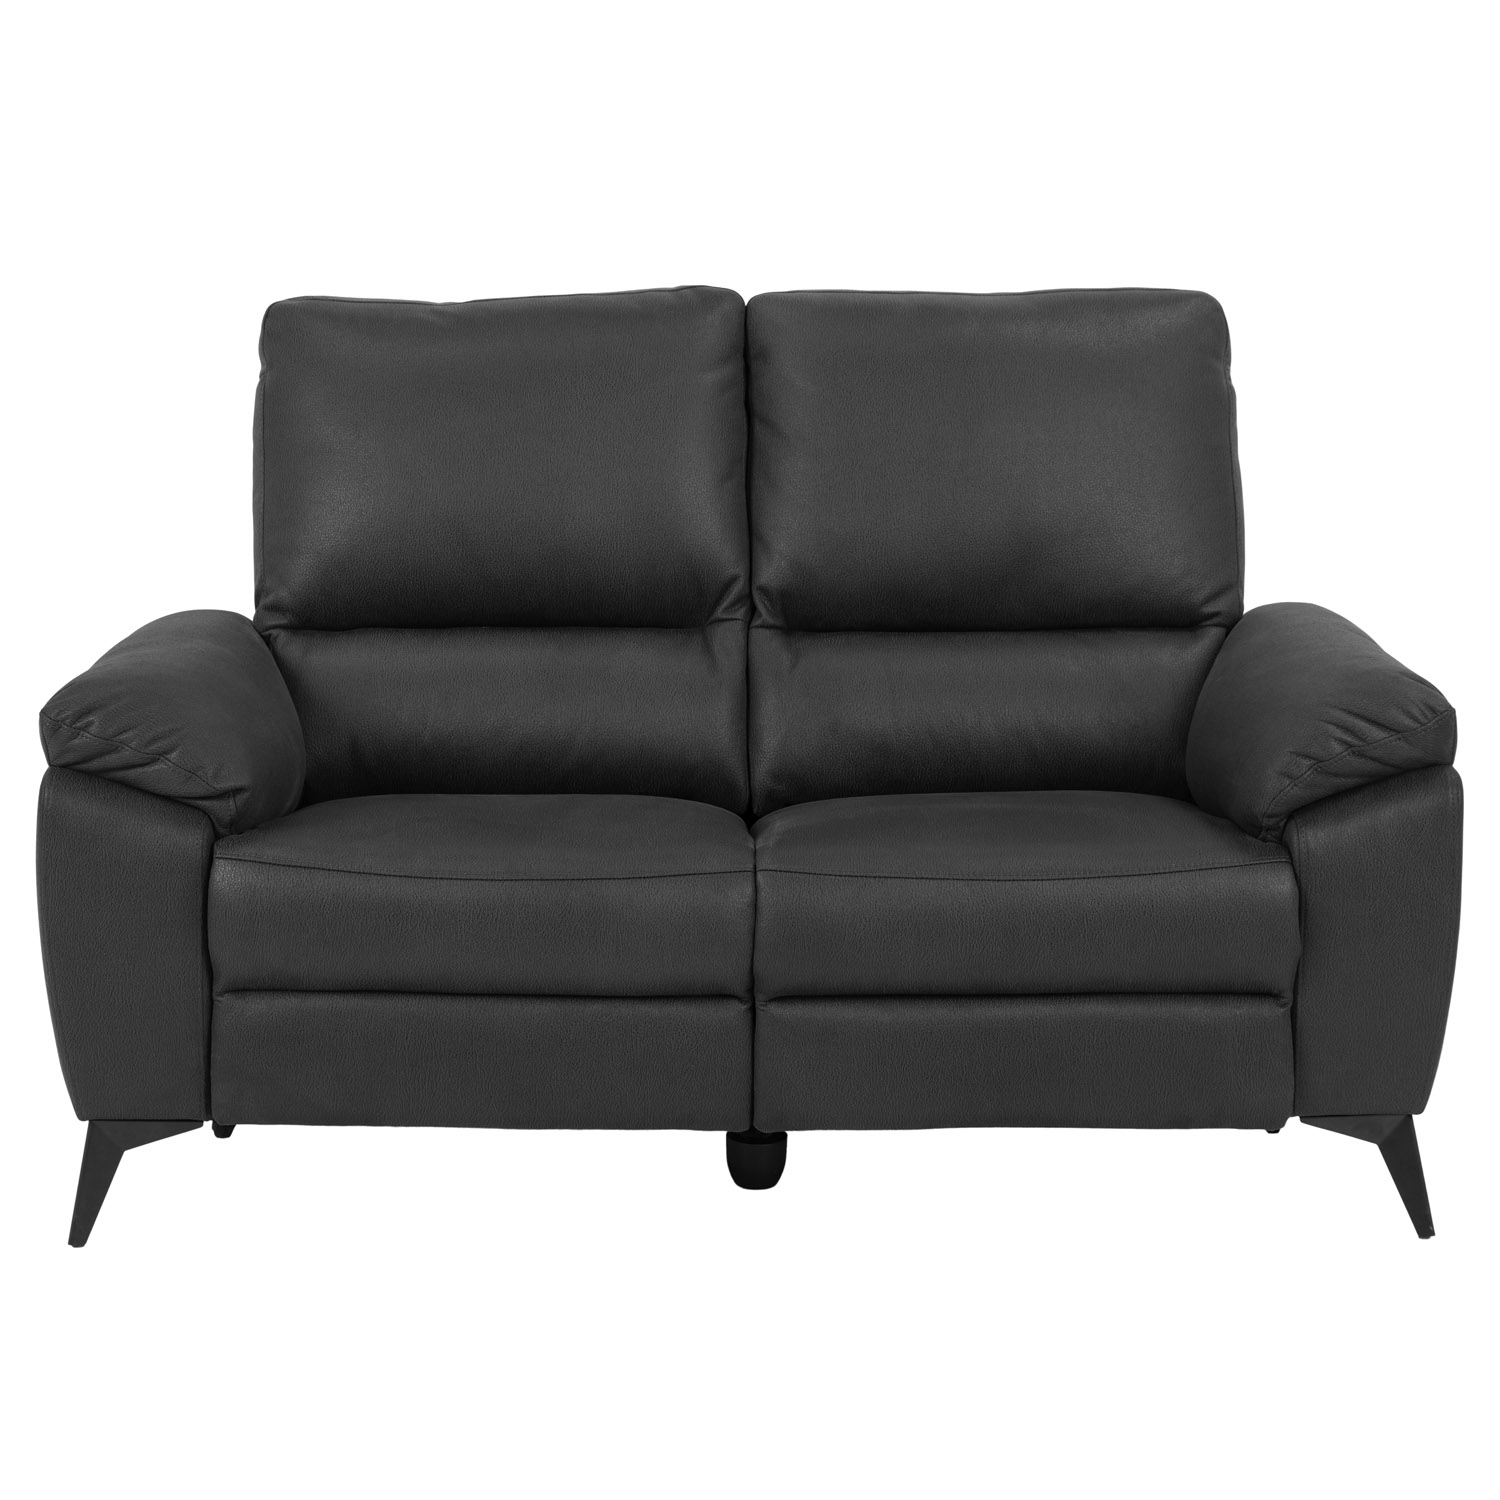 ACT NORDIC Rana 2 pers. sofa, m. 2 elektriske reclinere og USB port C stik - grå polyester og sort metal